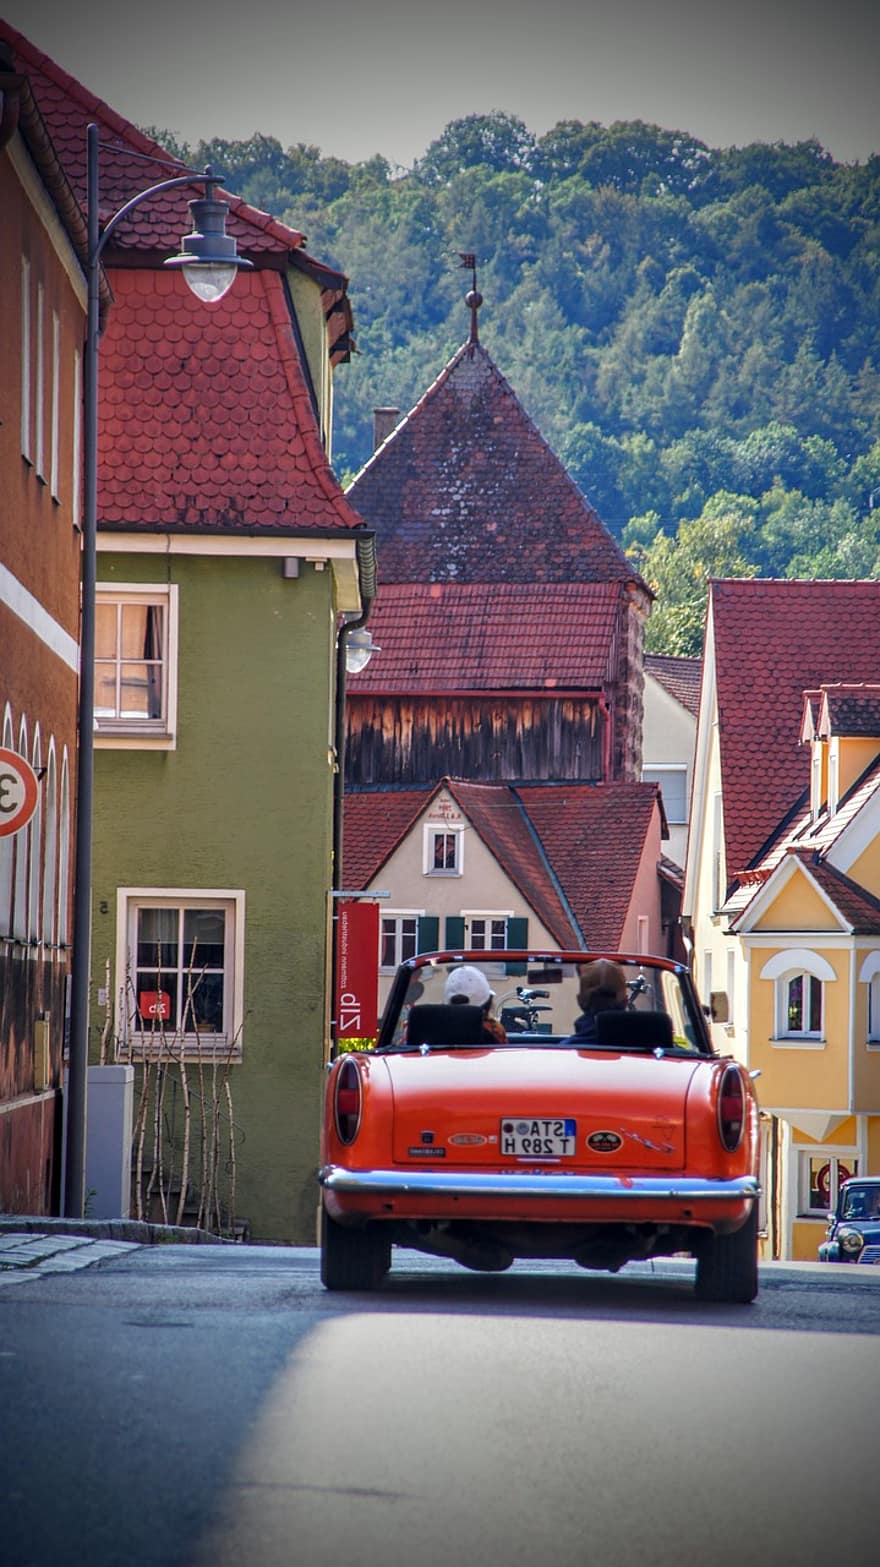 Auto, Rallye, Straße, Gebäude, Stadt, Dorf, altes Auto, klassisches Auto, Fahrzeug, Automobil, Häuser, Fränkisches Seenland